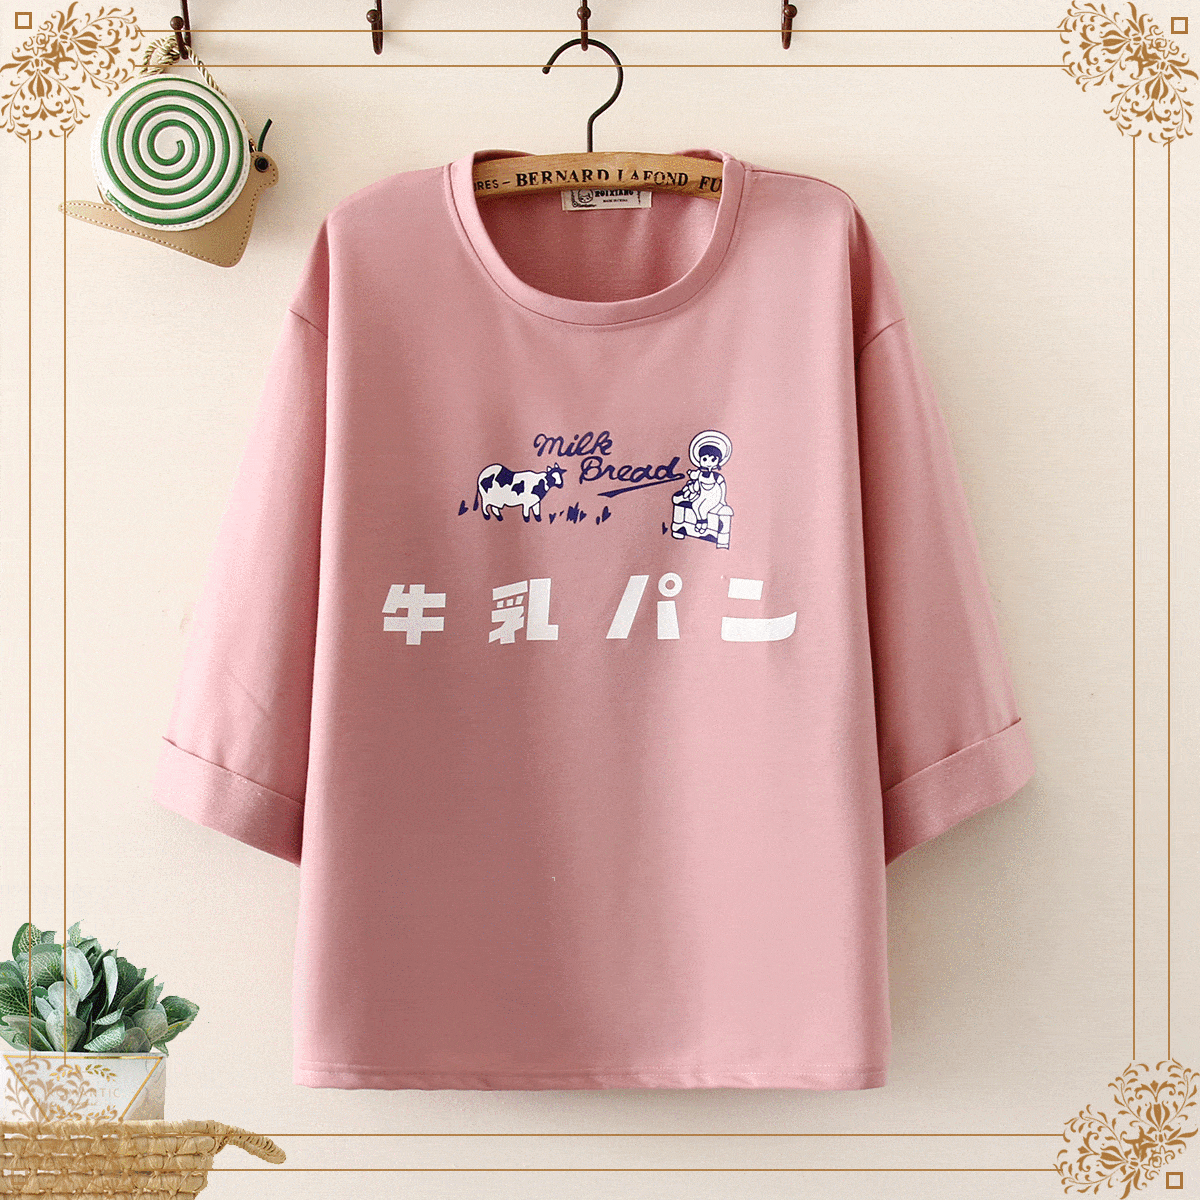 Kawaiifashion - Camisetas con estampado japonés y vaca Kawaii para mujer